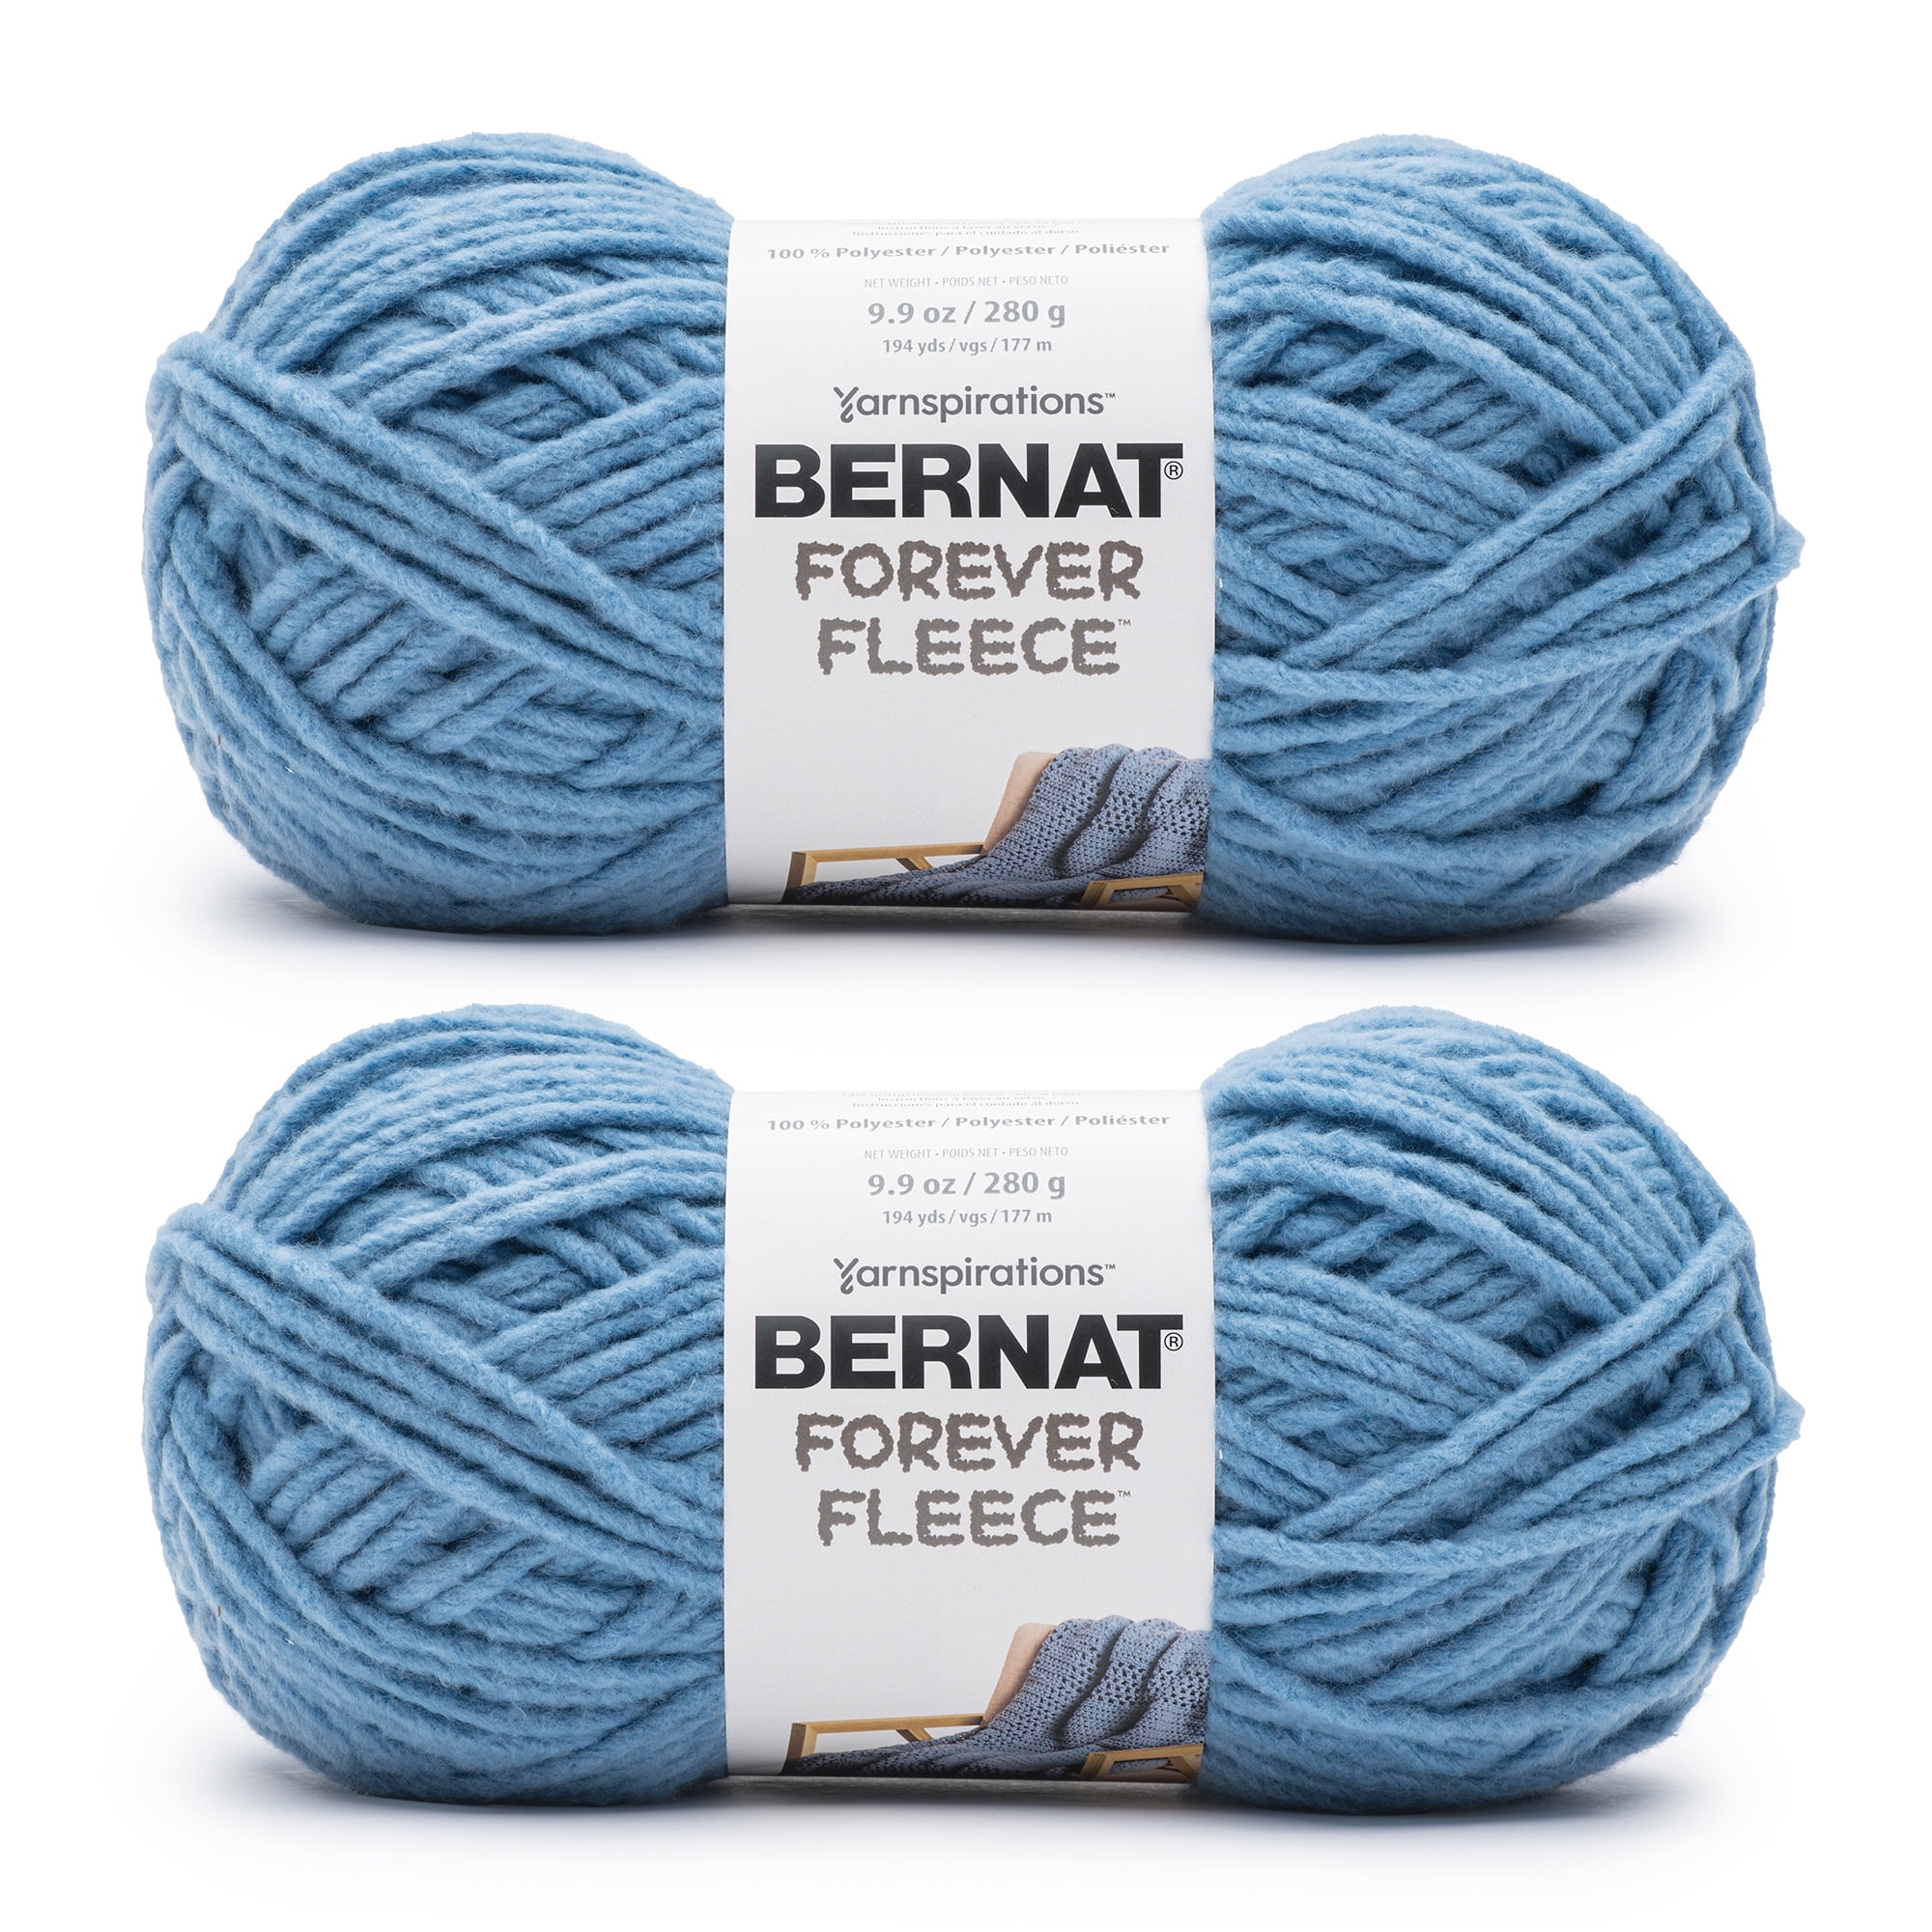 Bernat Forever Fleece White Noise Yarn - 2 Pack of 280g/9.9oz